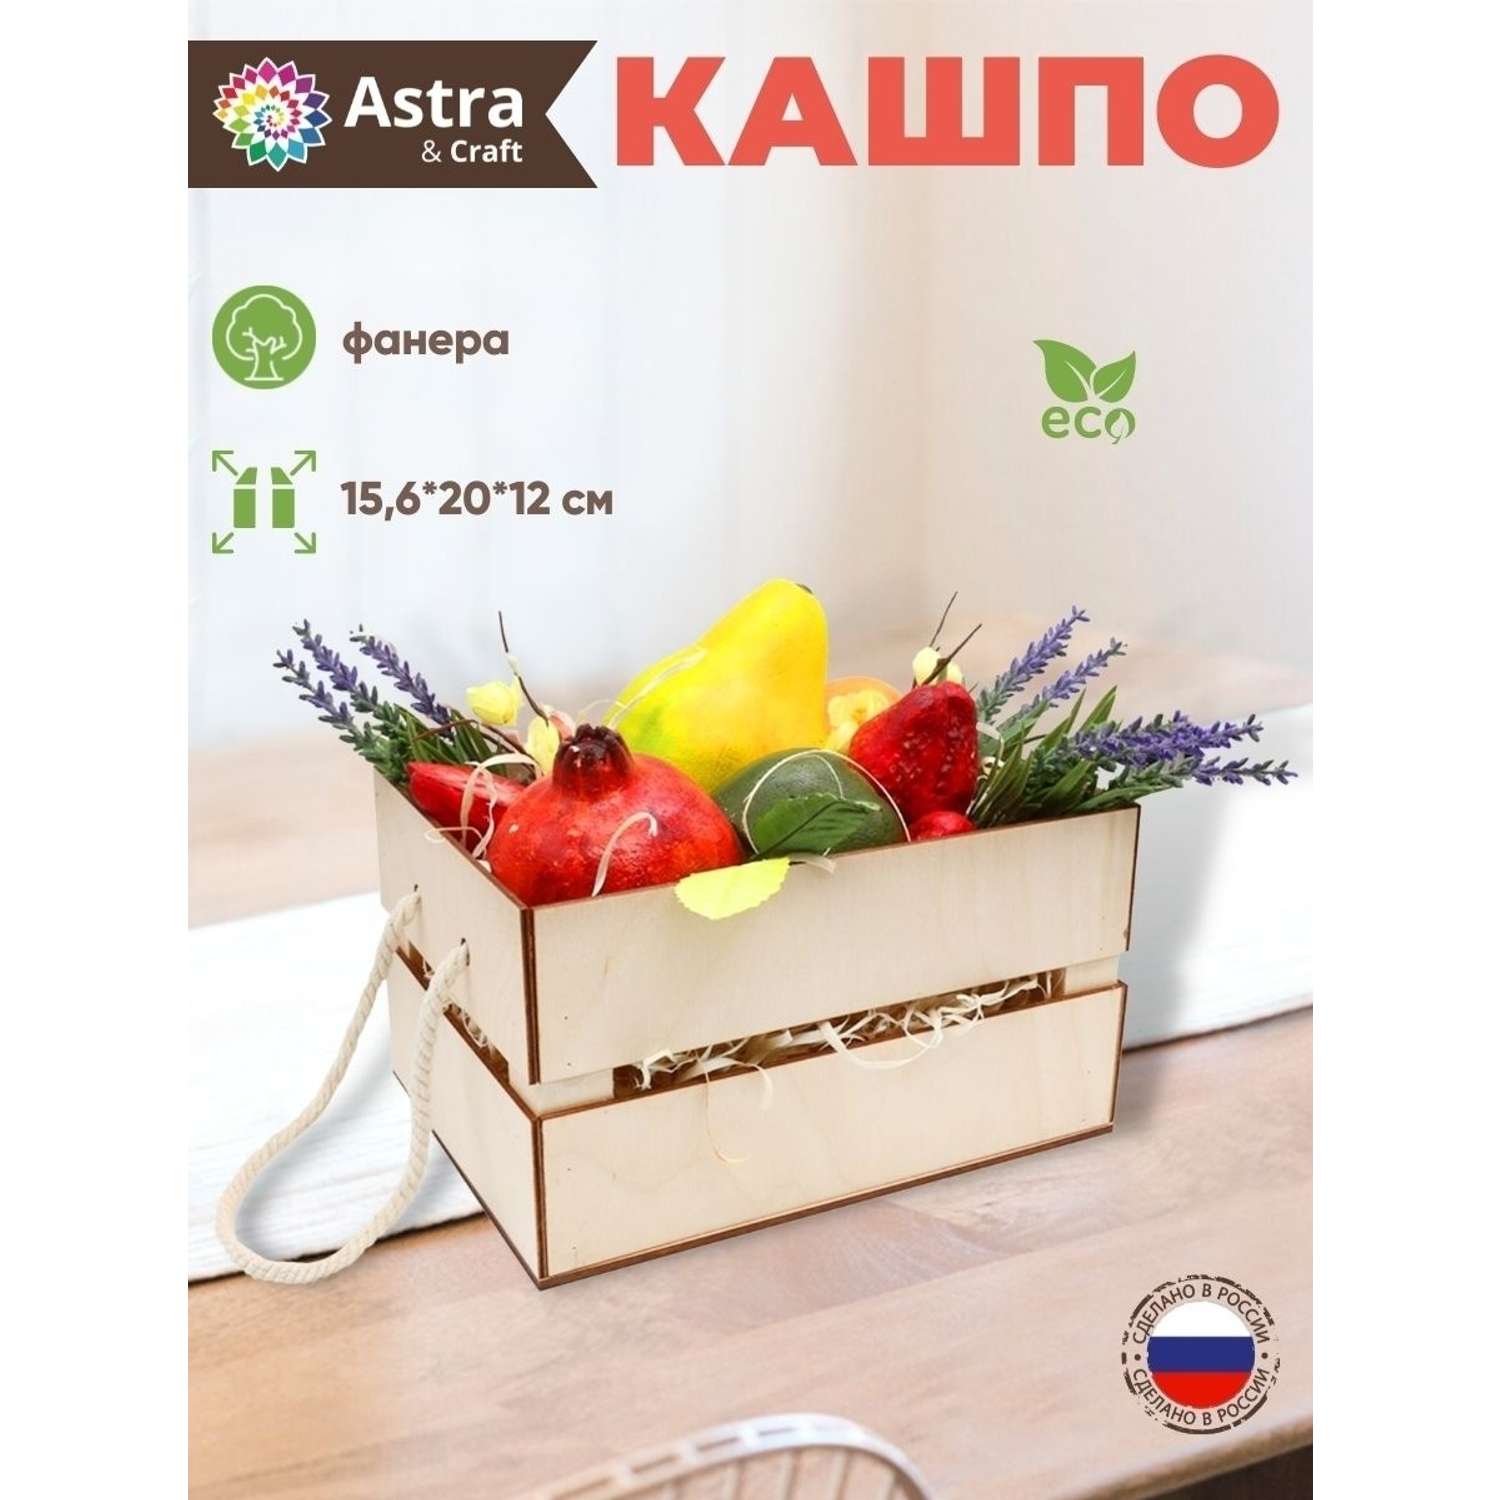 Кашпо Astra Craft с ручками для творчества рукоделия флористики 15.6х20х12 см белый - фото 1